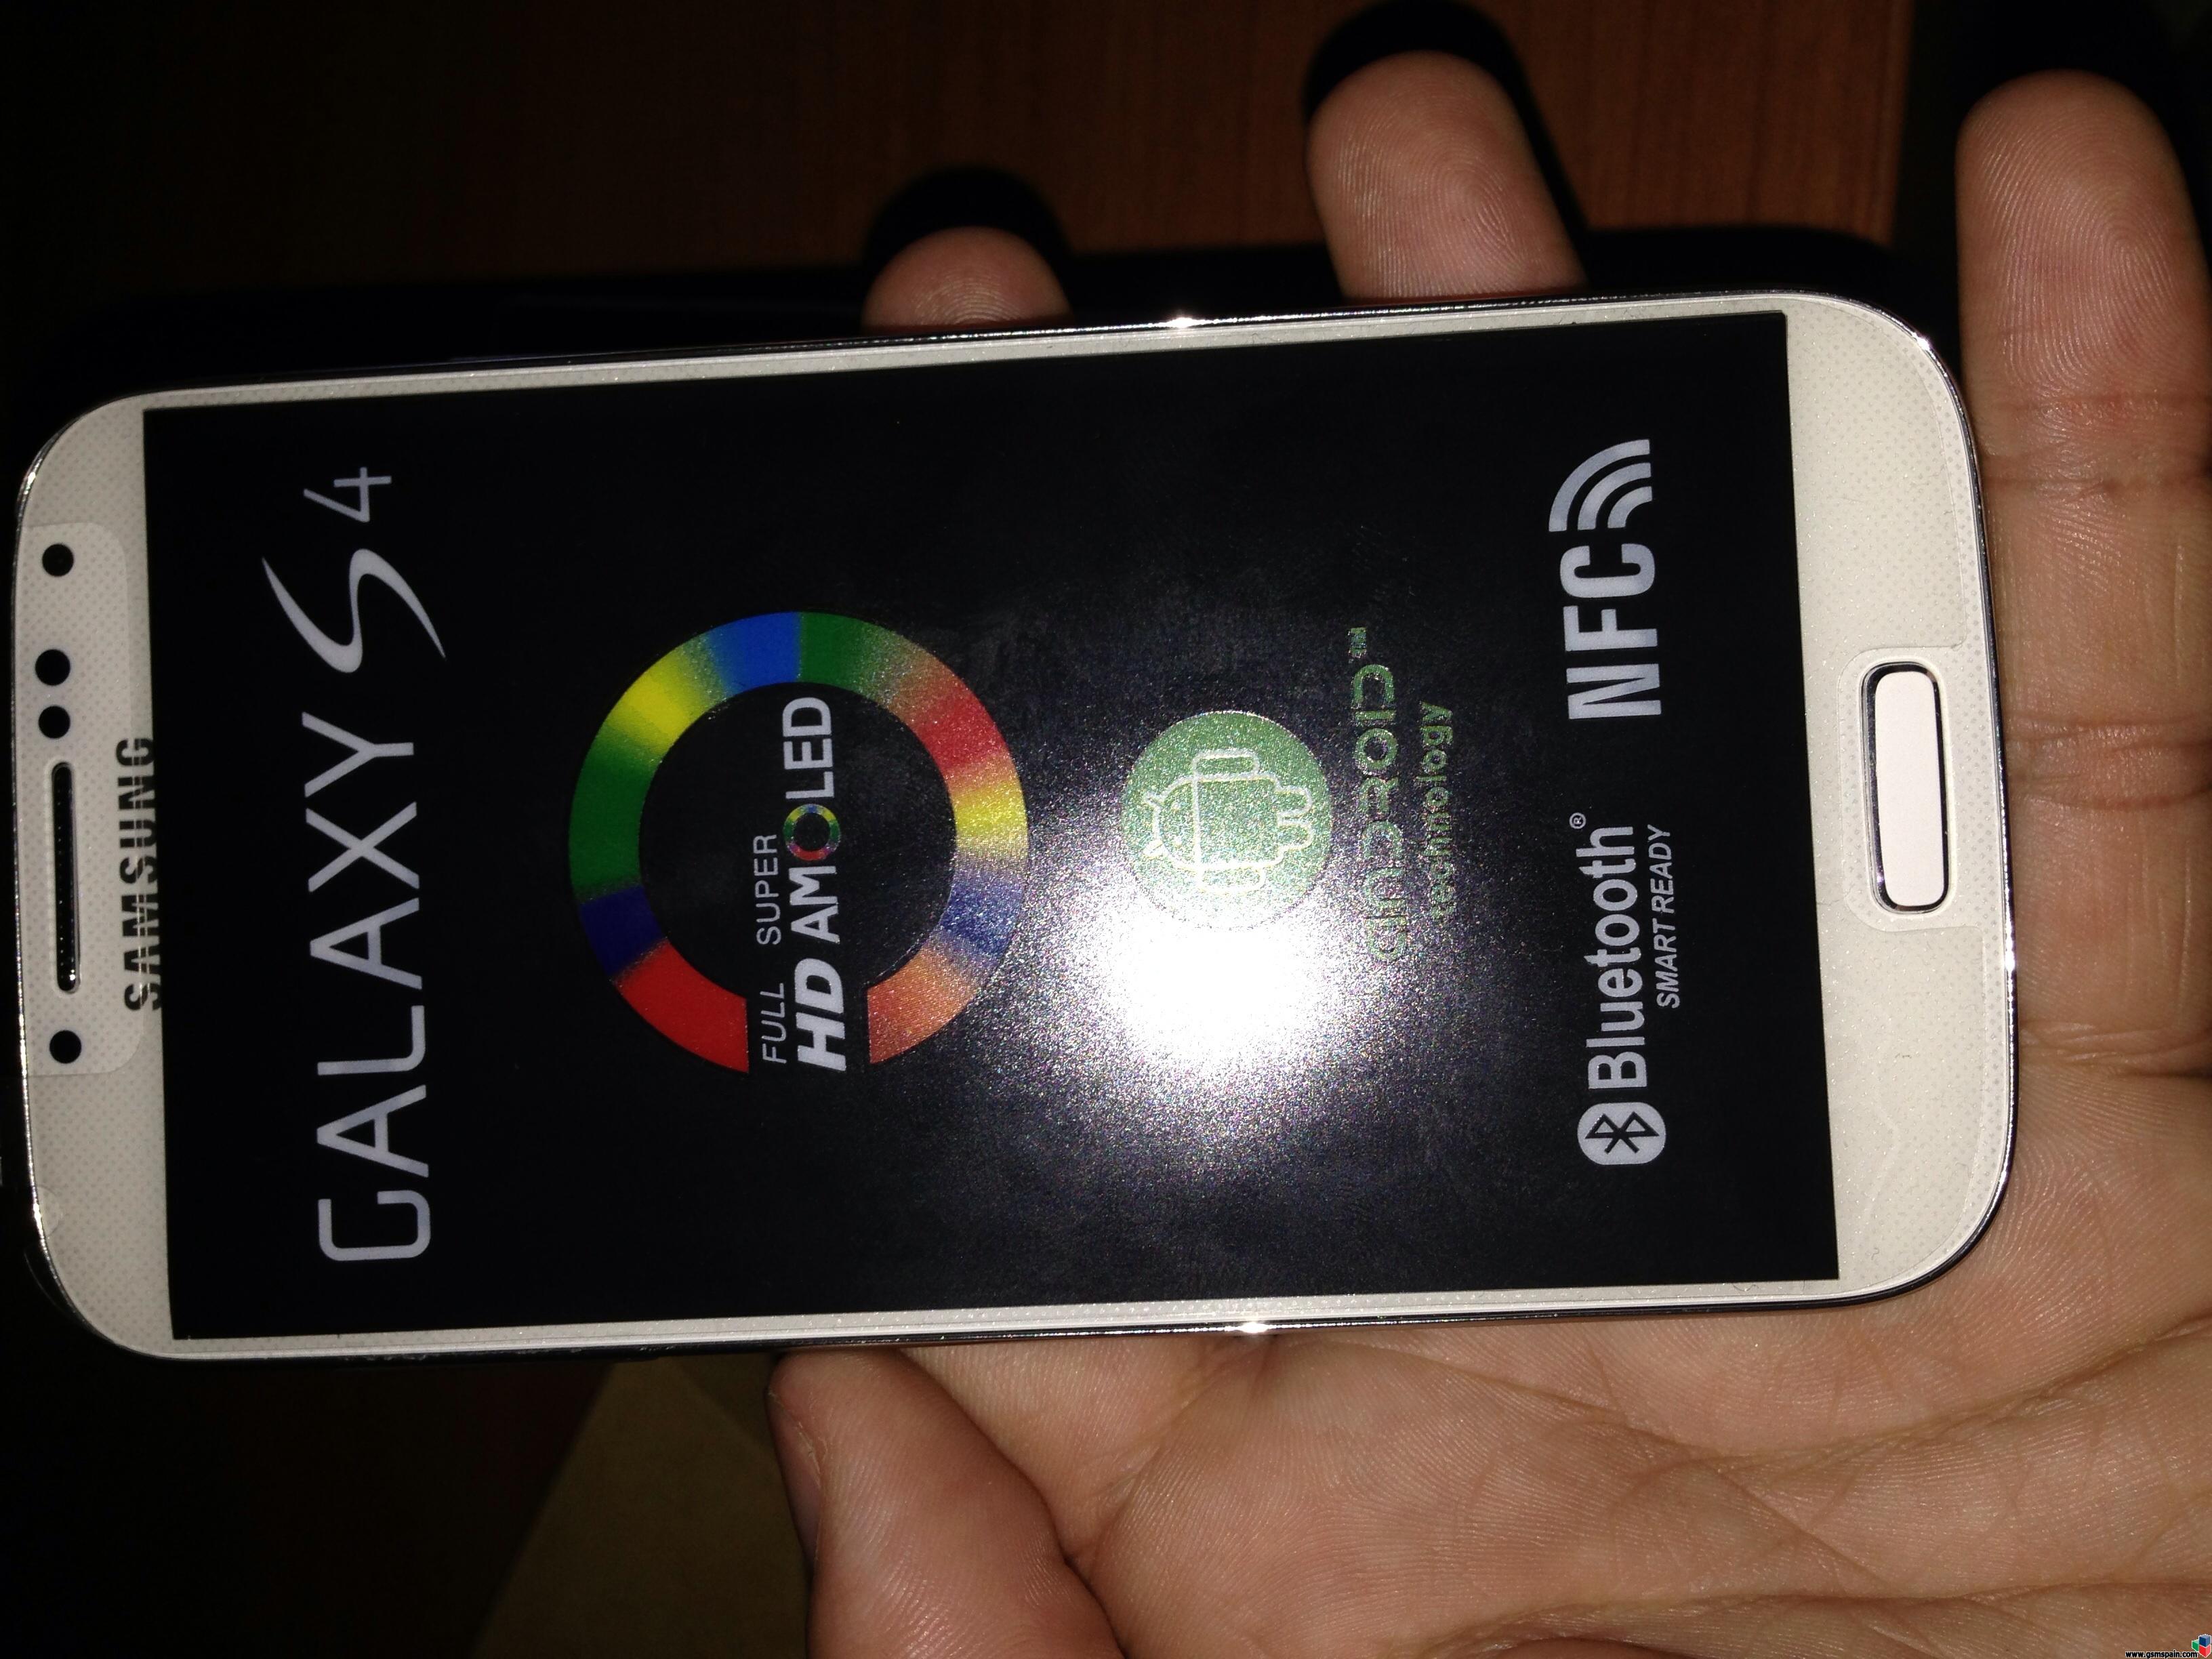 [VENDO] La mejor replica del Samusung Galaxy S4, con logos y todo igual . 1:1